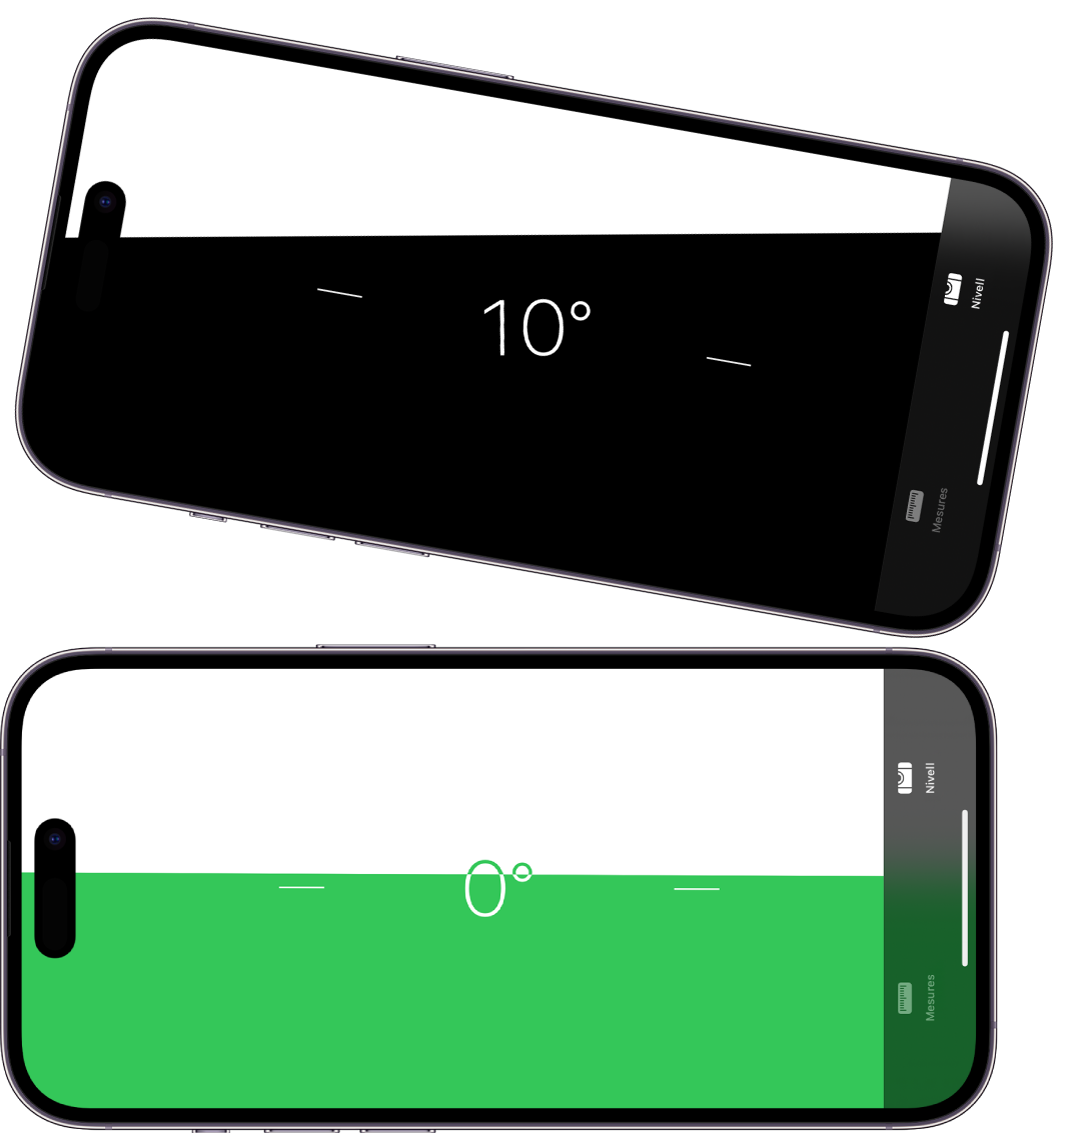 La pantalla de nivell a l’app Mesures. A la part superior, l’iPhone està inclinat a un angle de deu graus; a la part inferior, l’iPhone està anivellat.